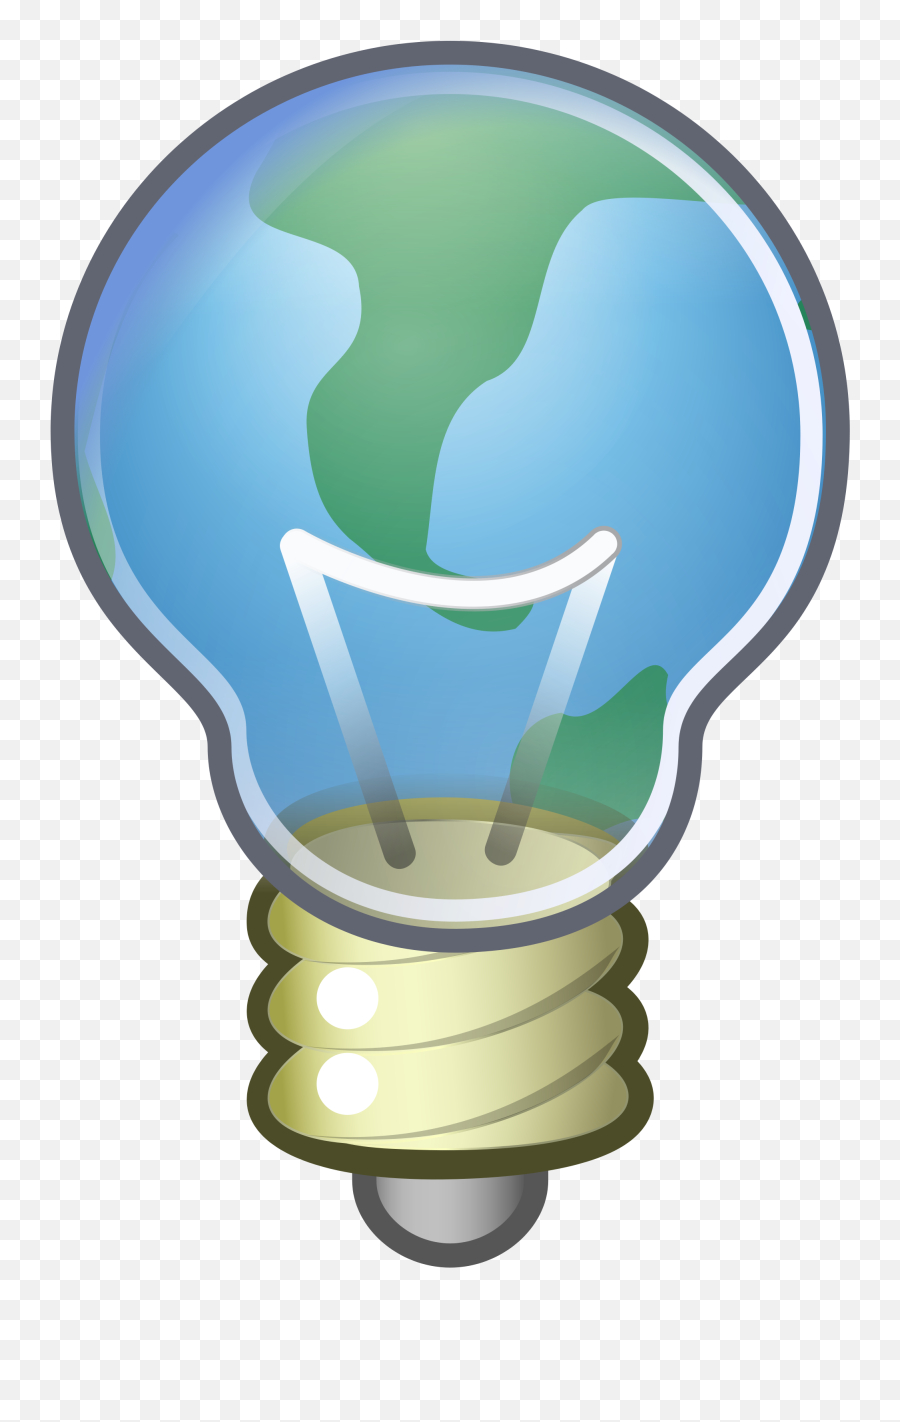 Lightbulb Clipart Critical Thinking Lightbulb Critical - Global Thinking Emoji,Lightbulb Clipart